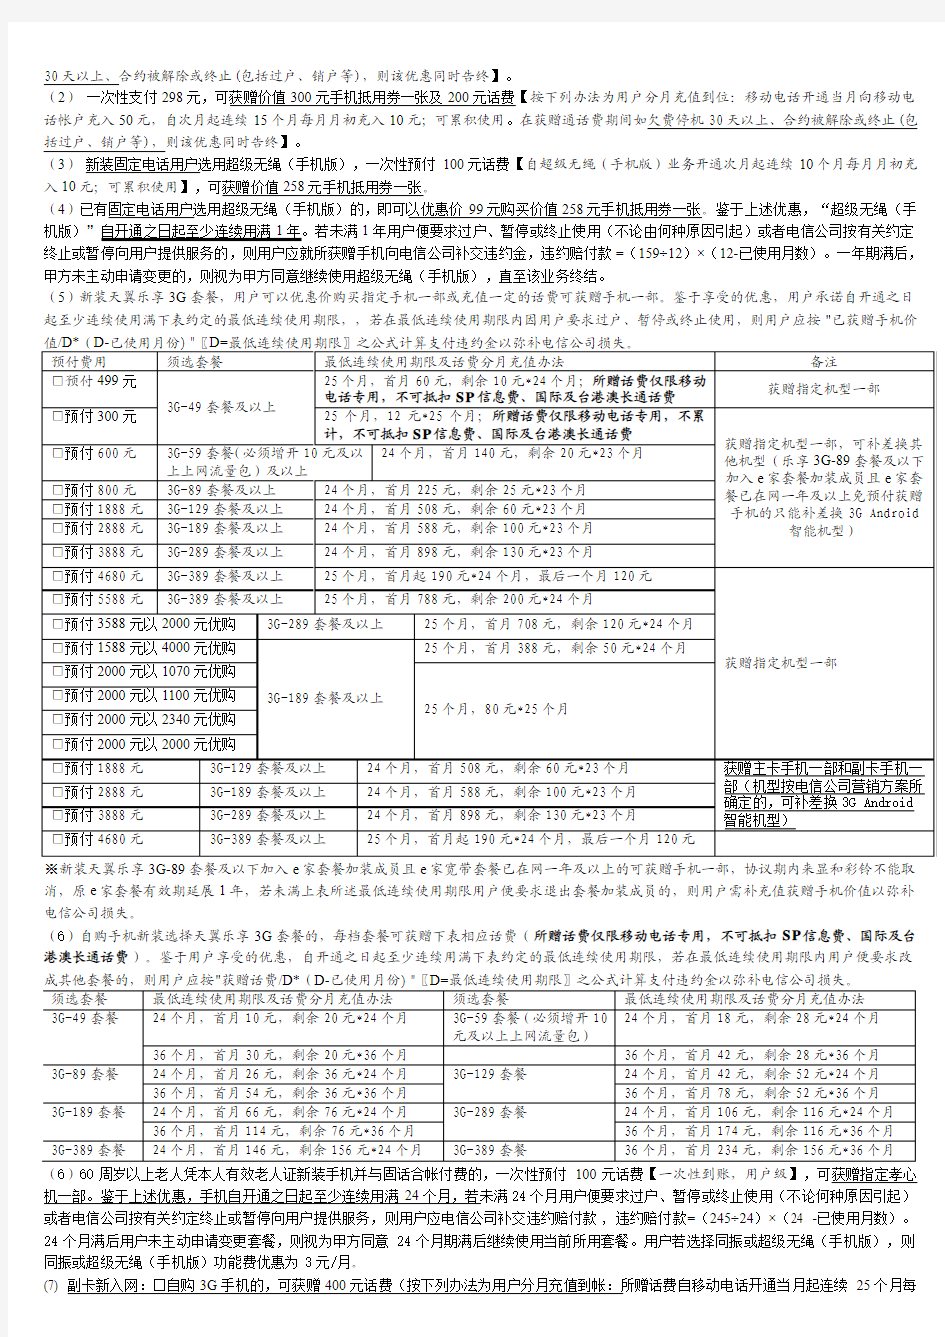 中国电信移动电话服务说明与用户须知(101228版)